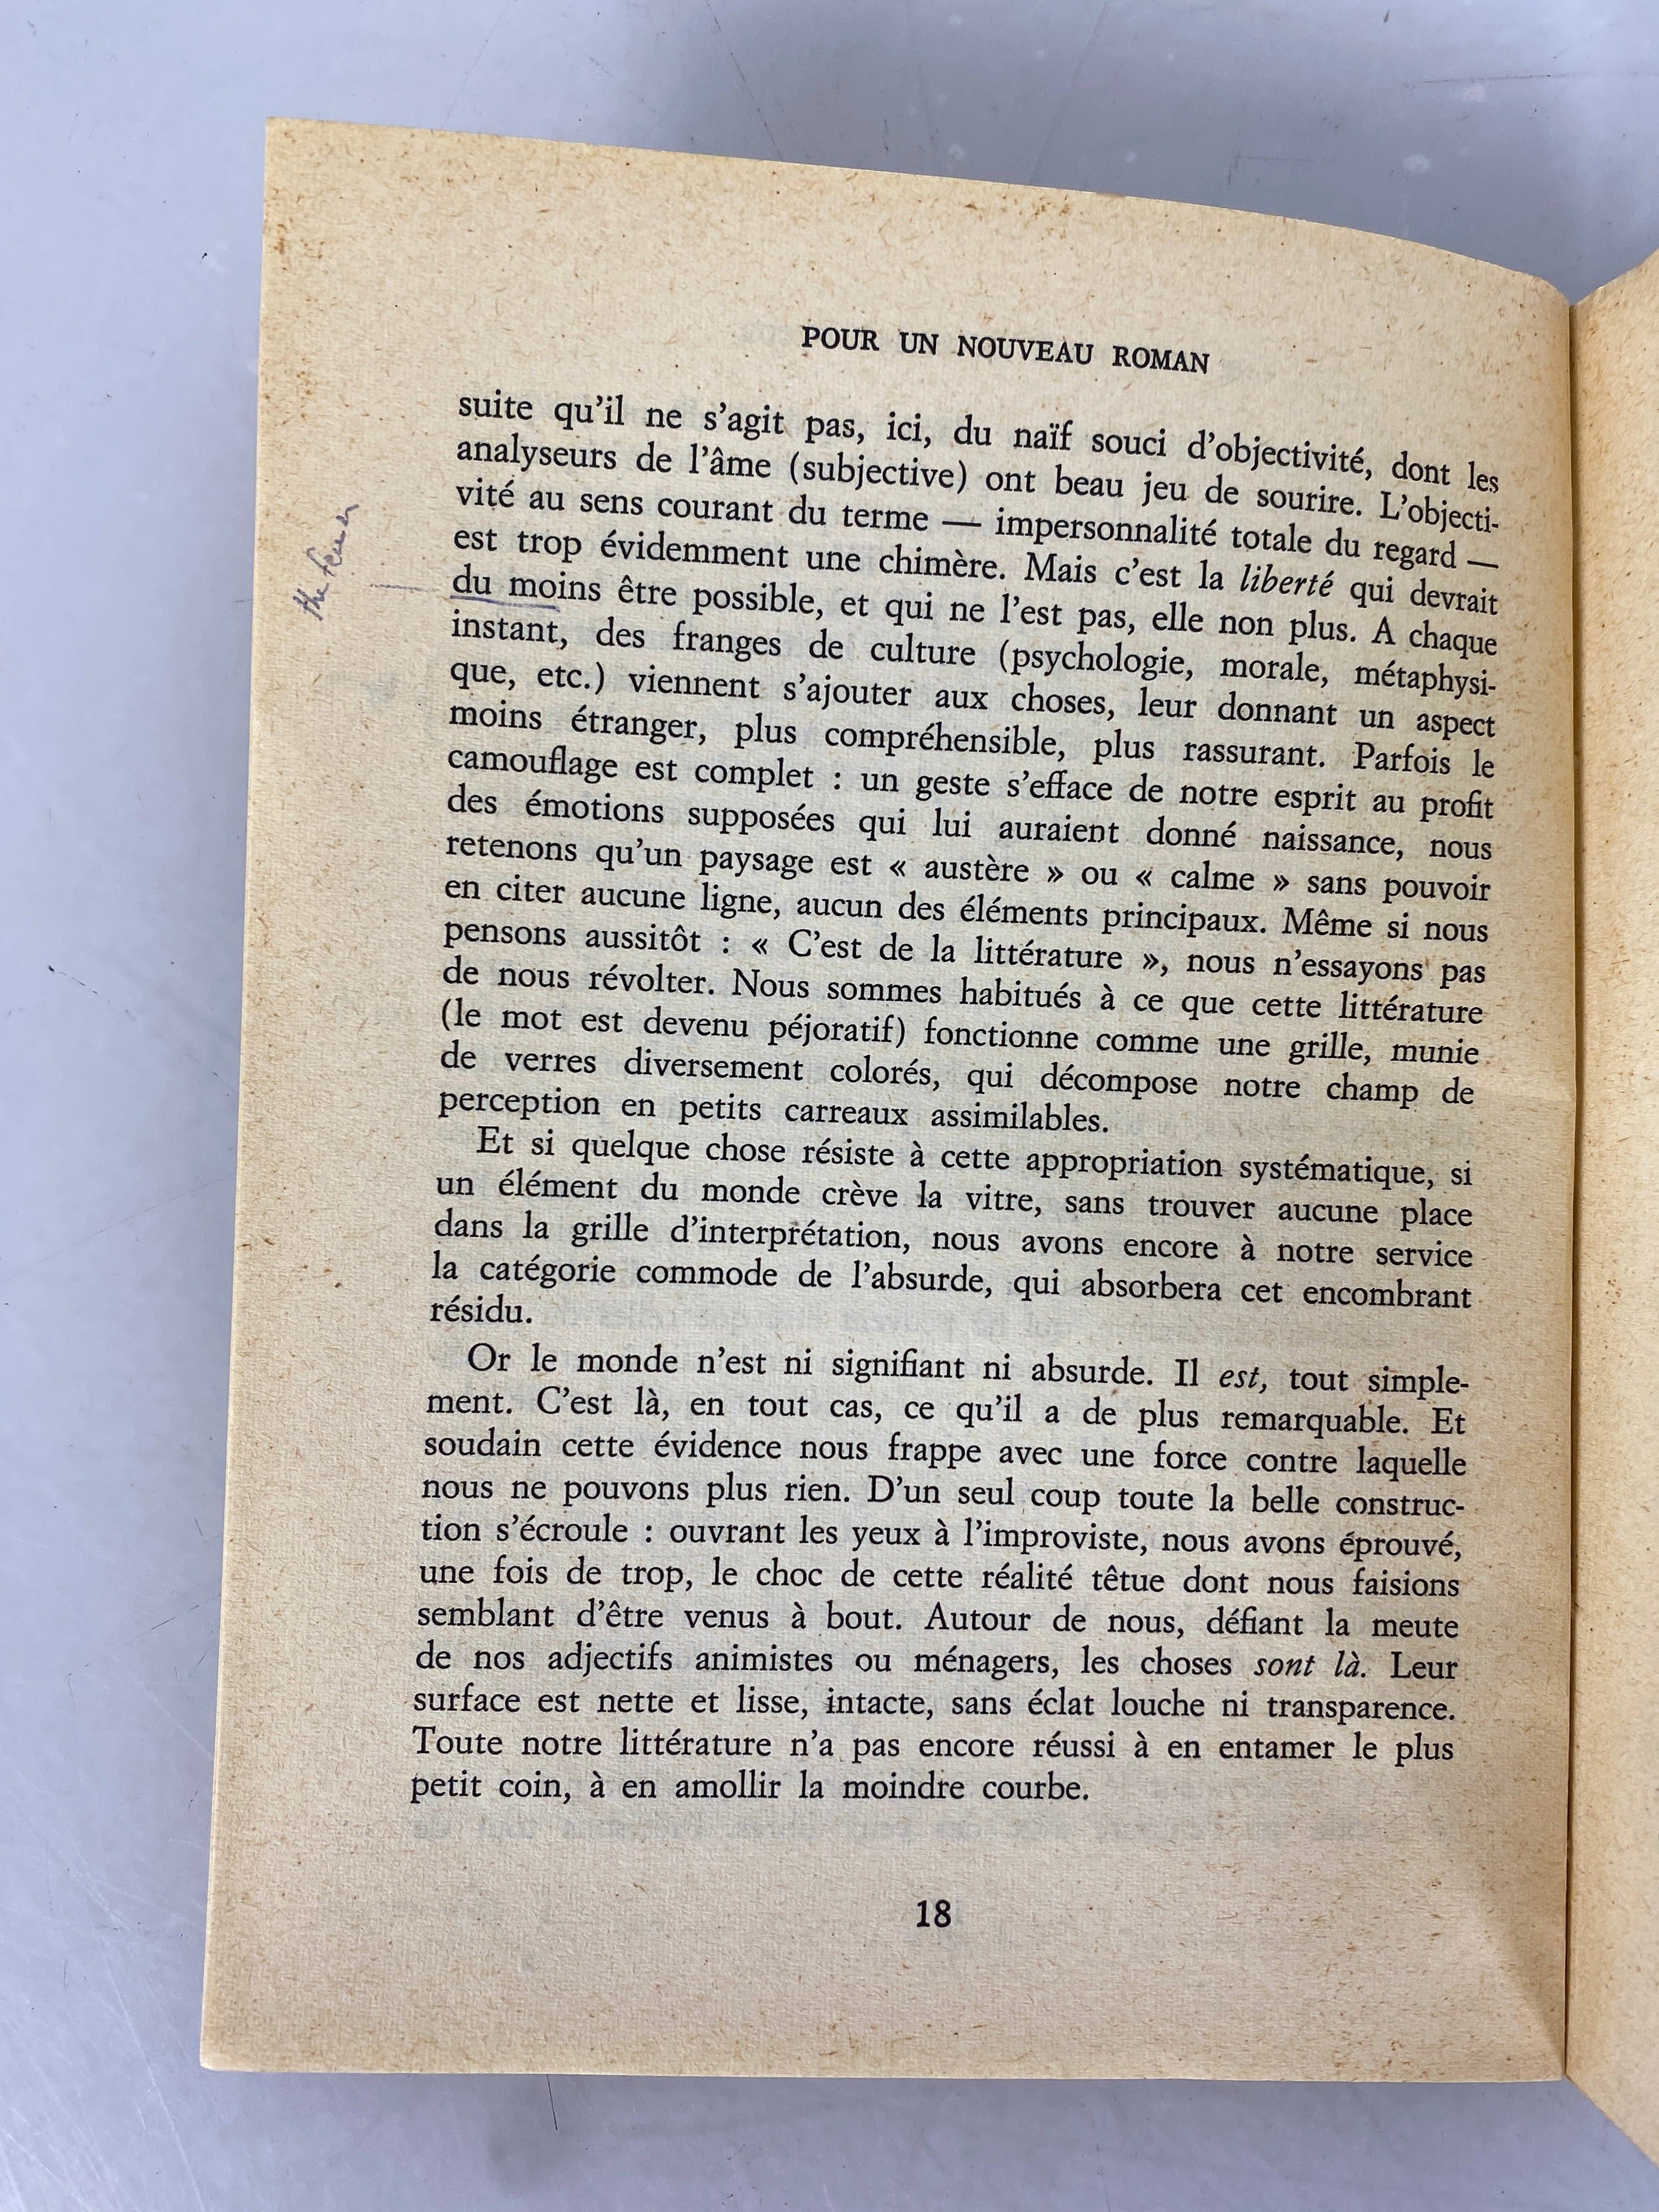 Pour un Nouveau Roman (For a New Novel) by Alain Robbe-Grillet 1963 SC French